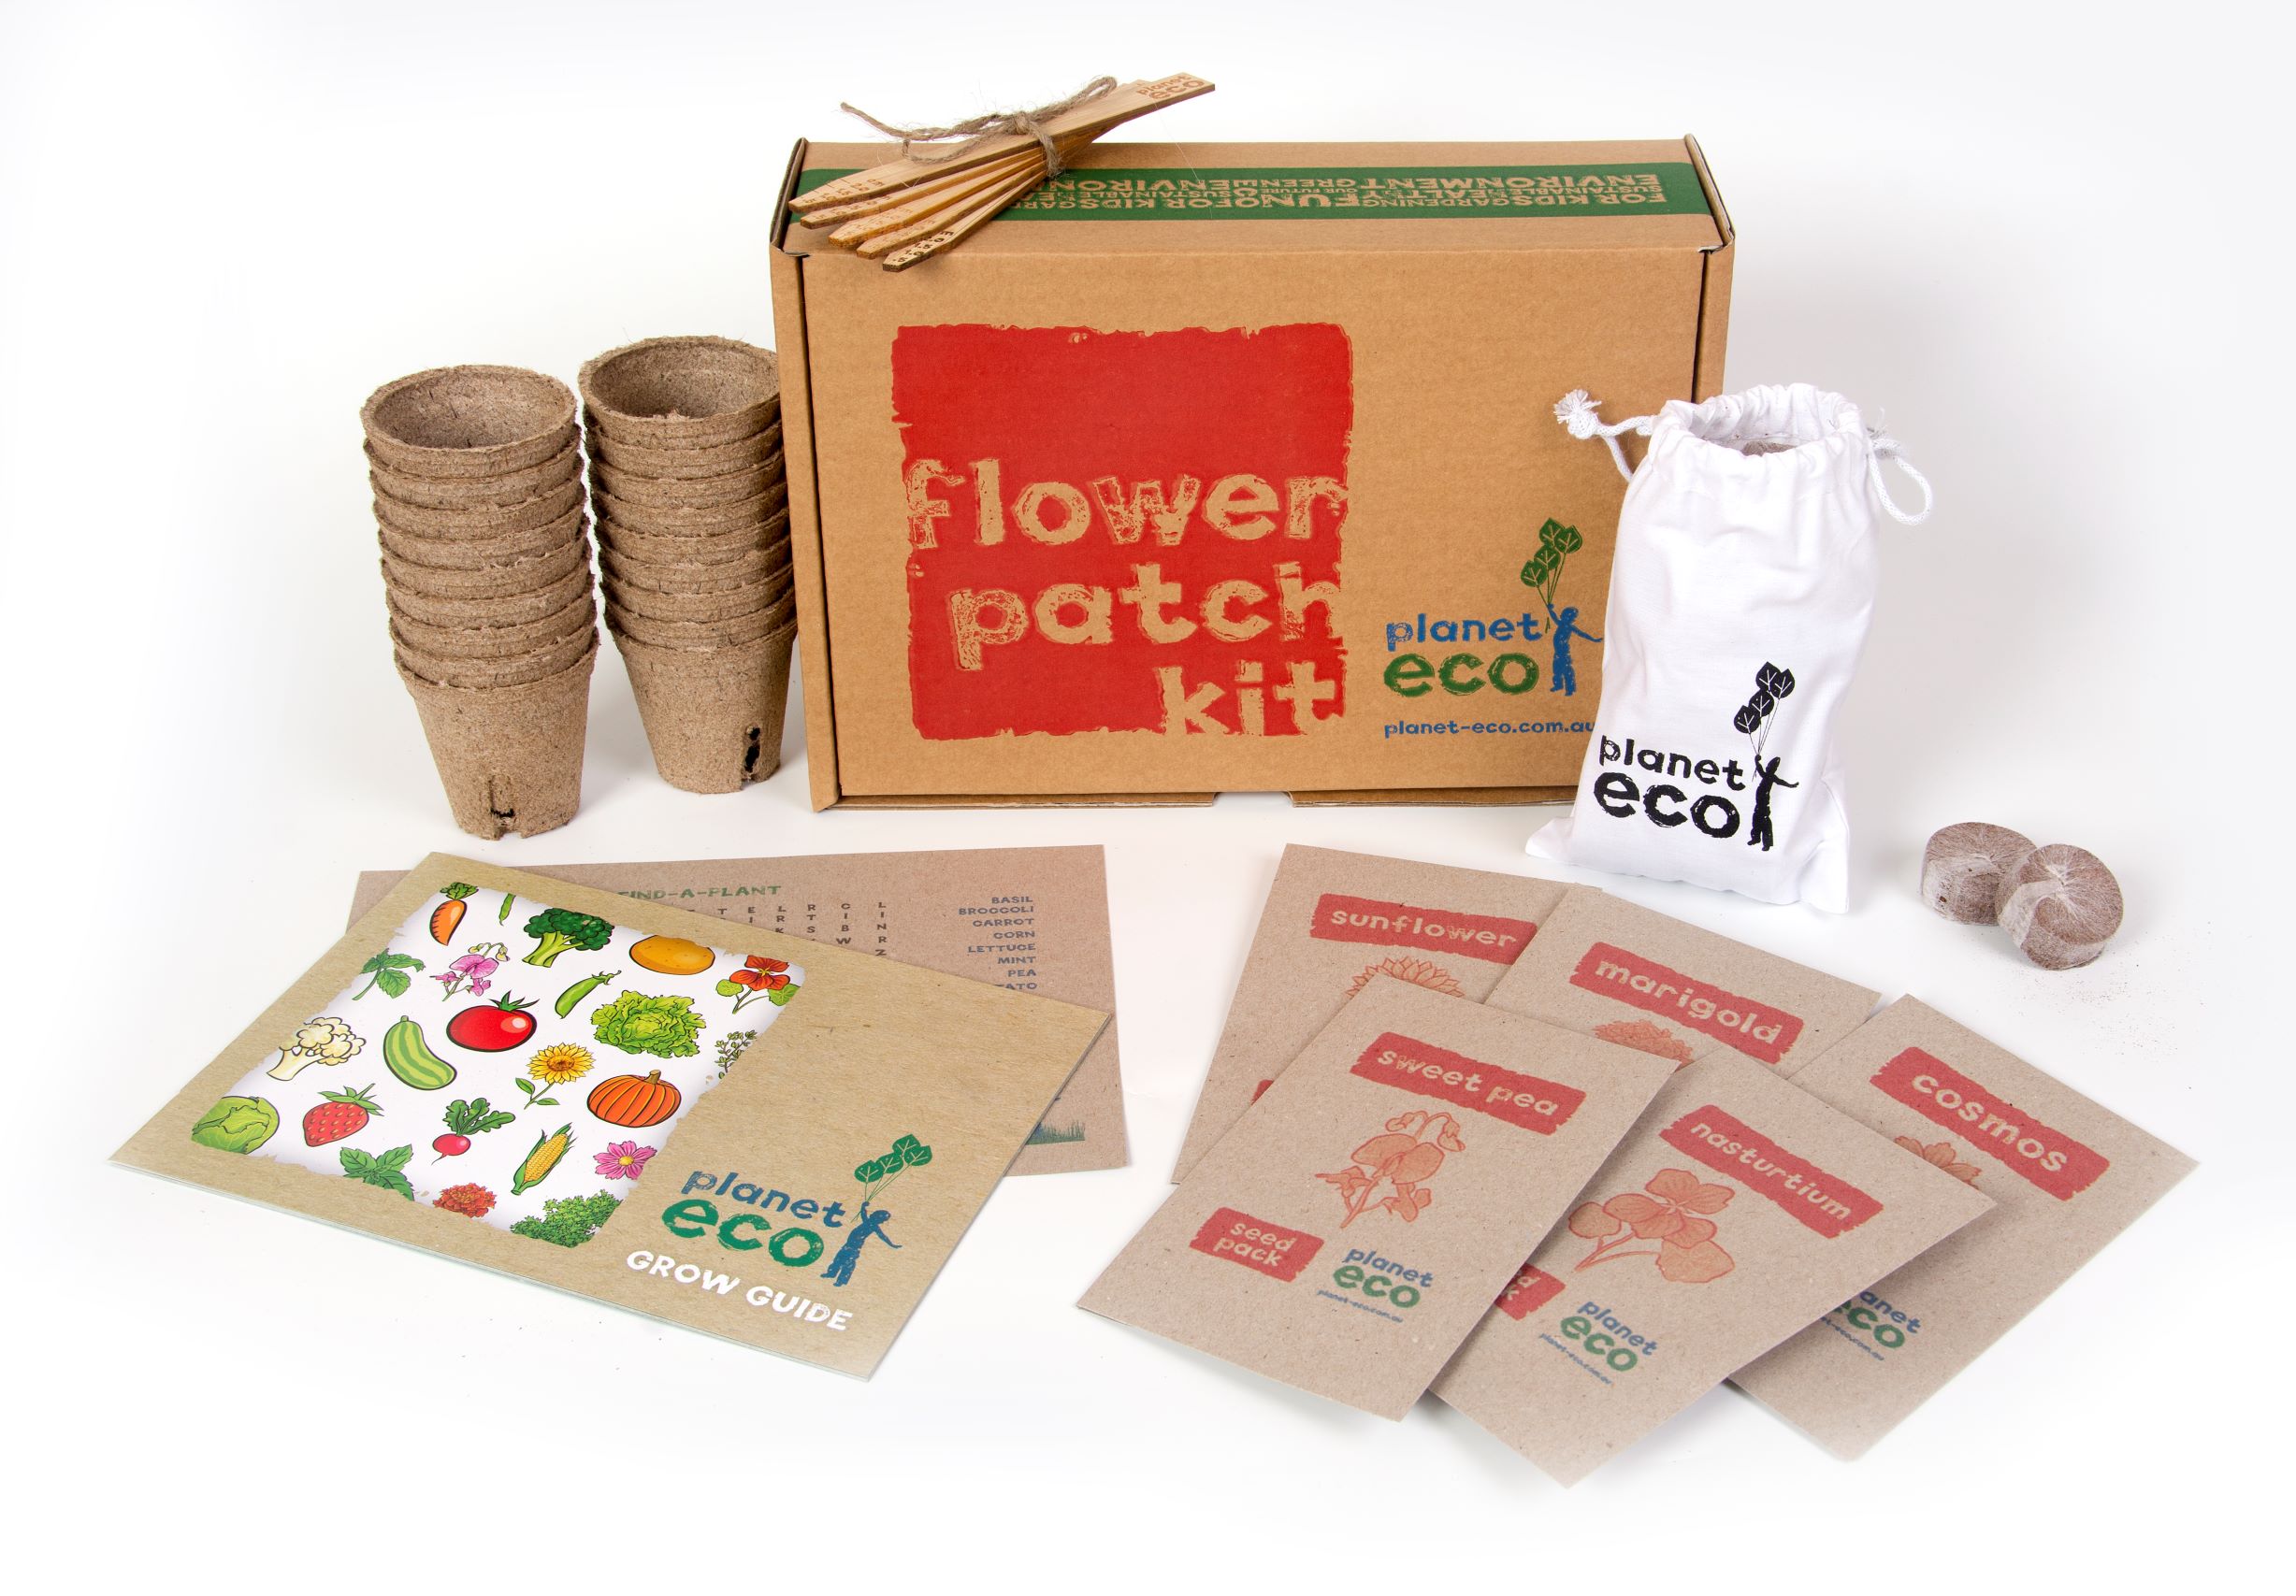 ECO Grow Bag Planting Kit